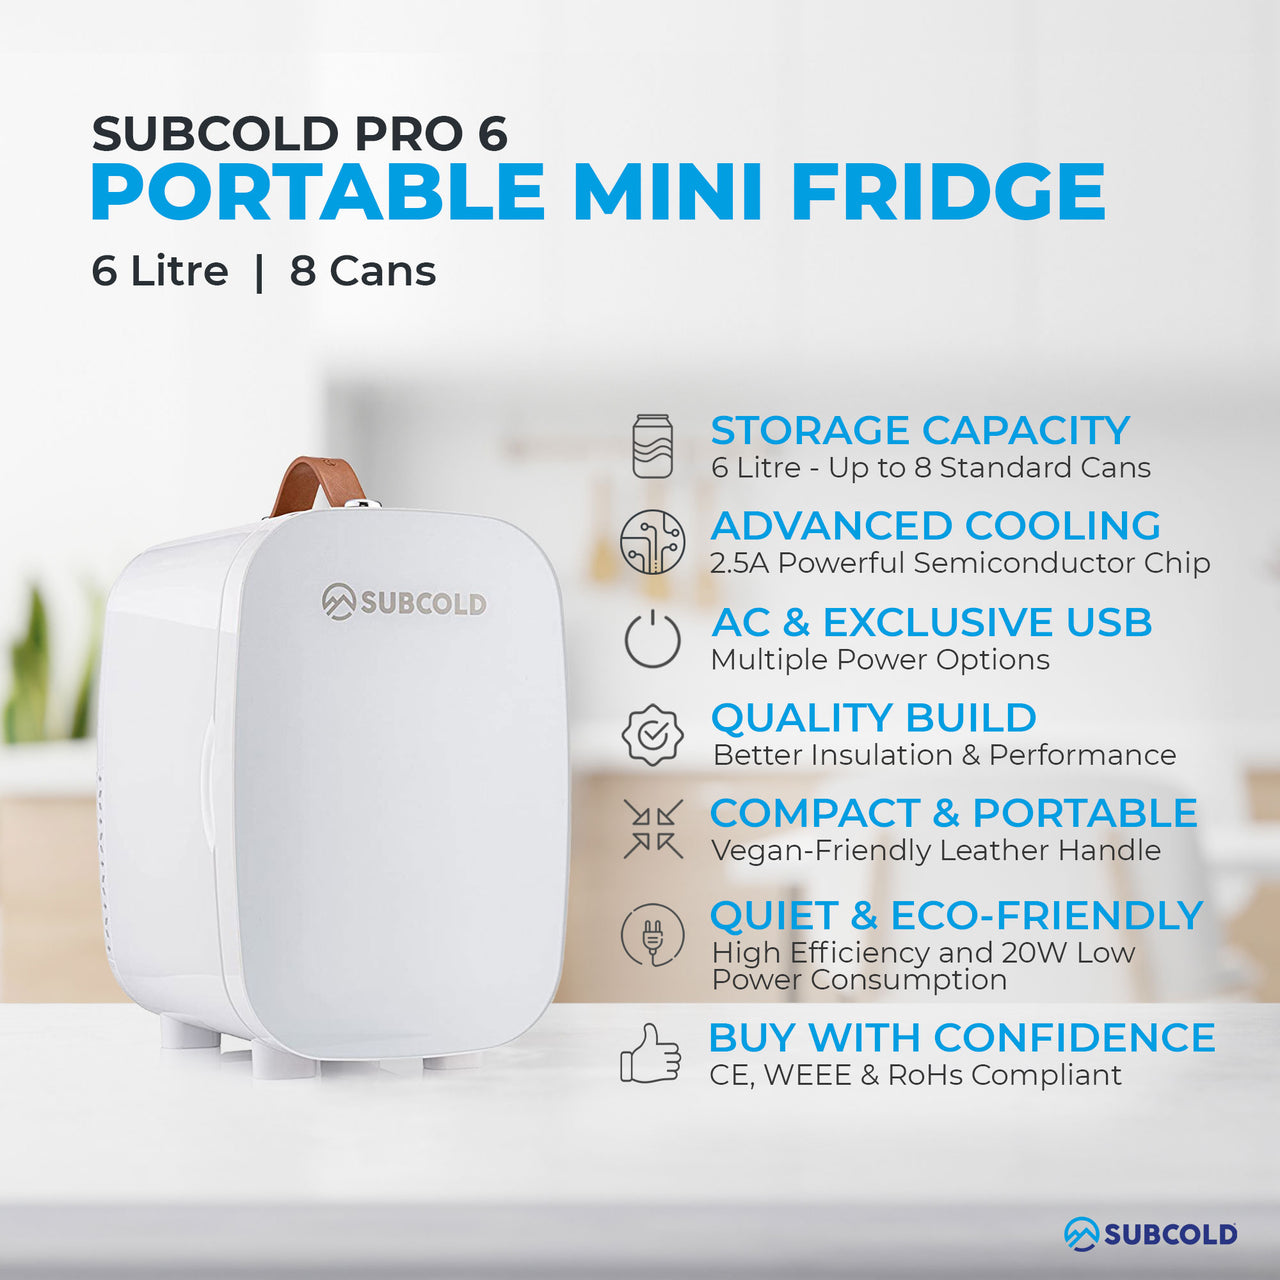 Subcold Pro 6 litre white mini fridge features infographic